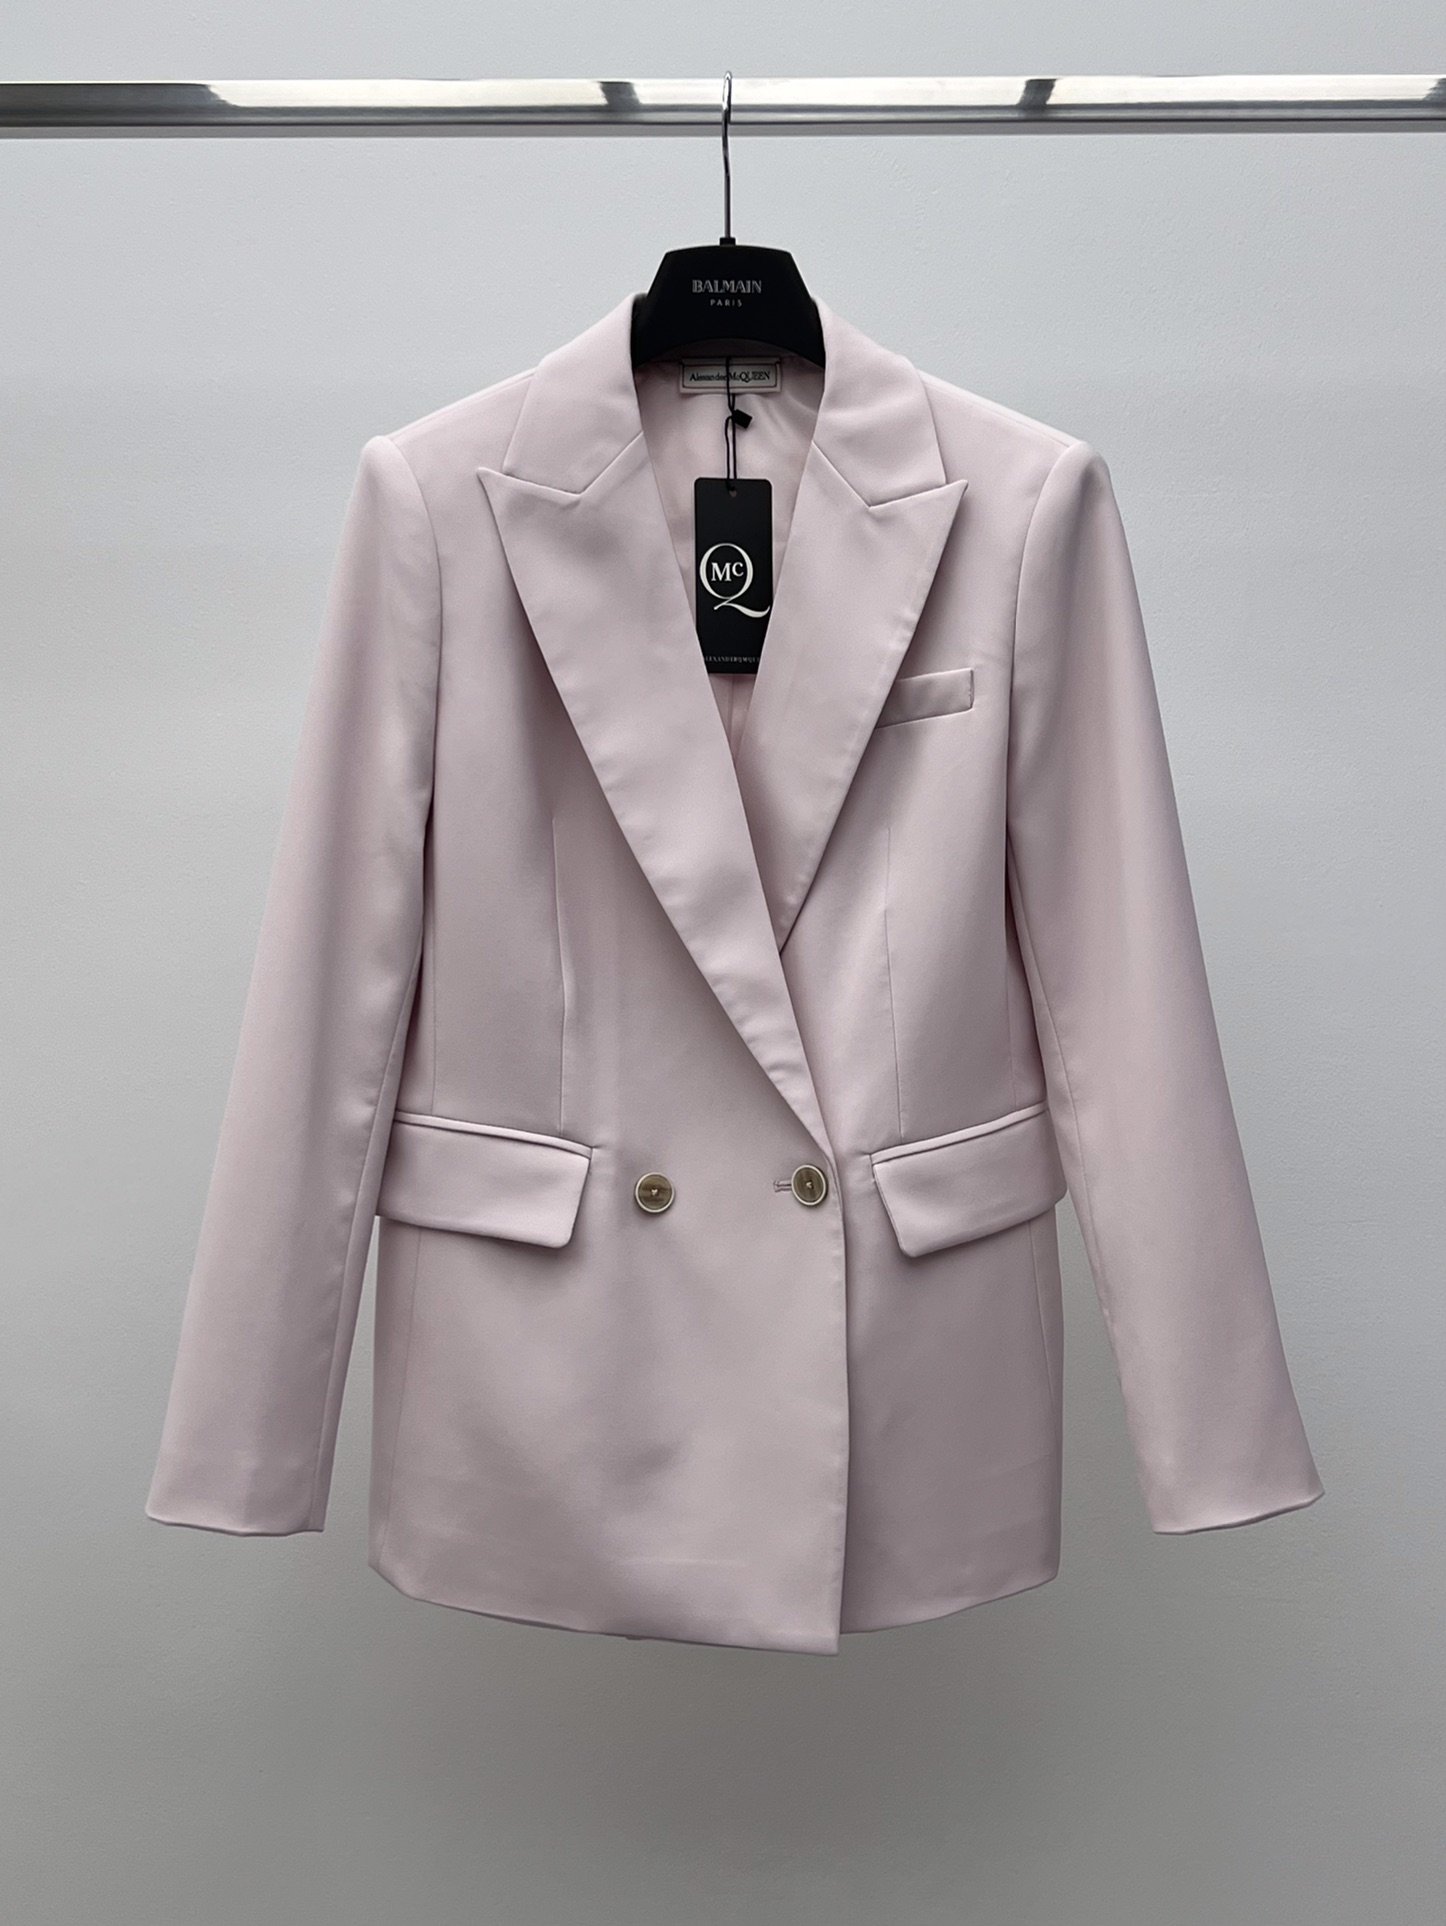 A jacket pink